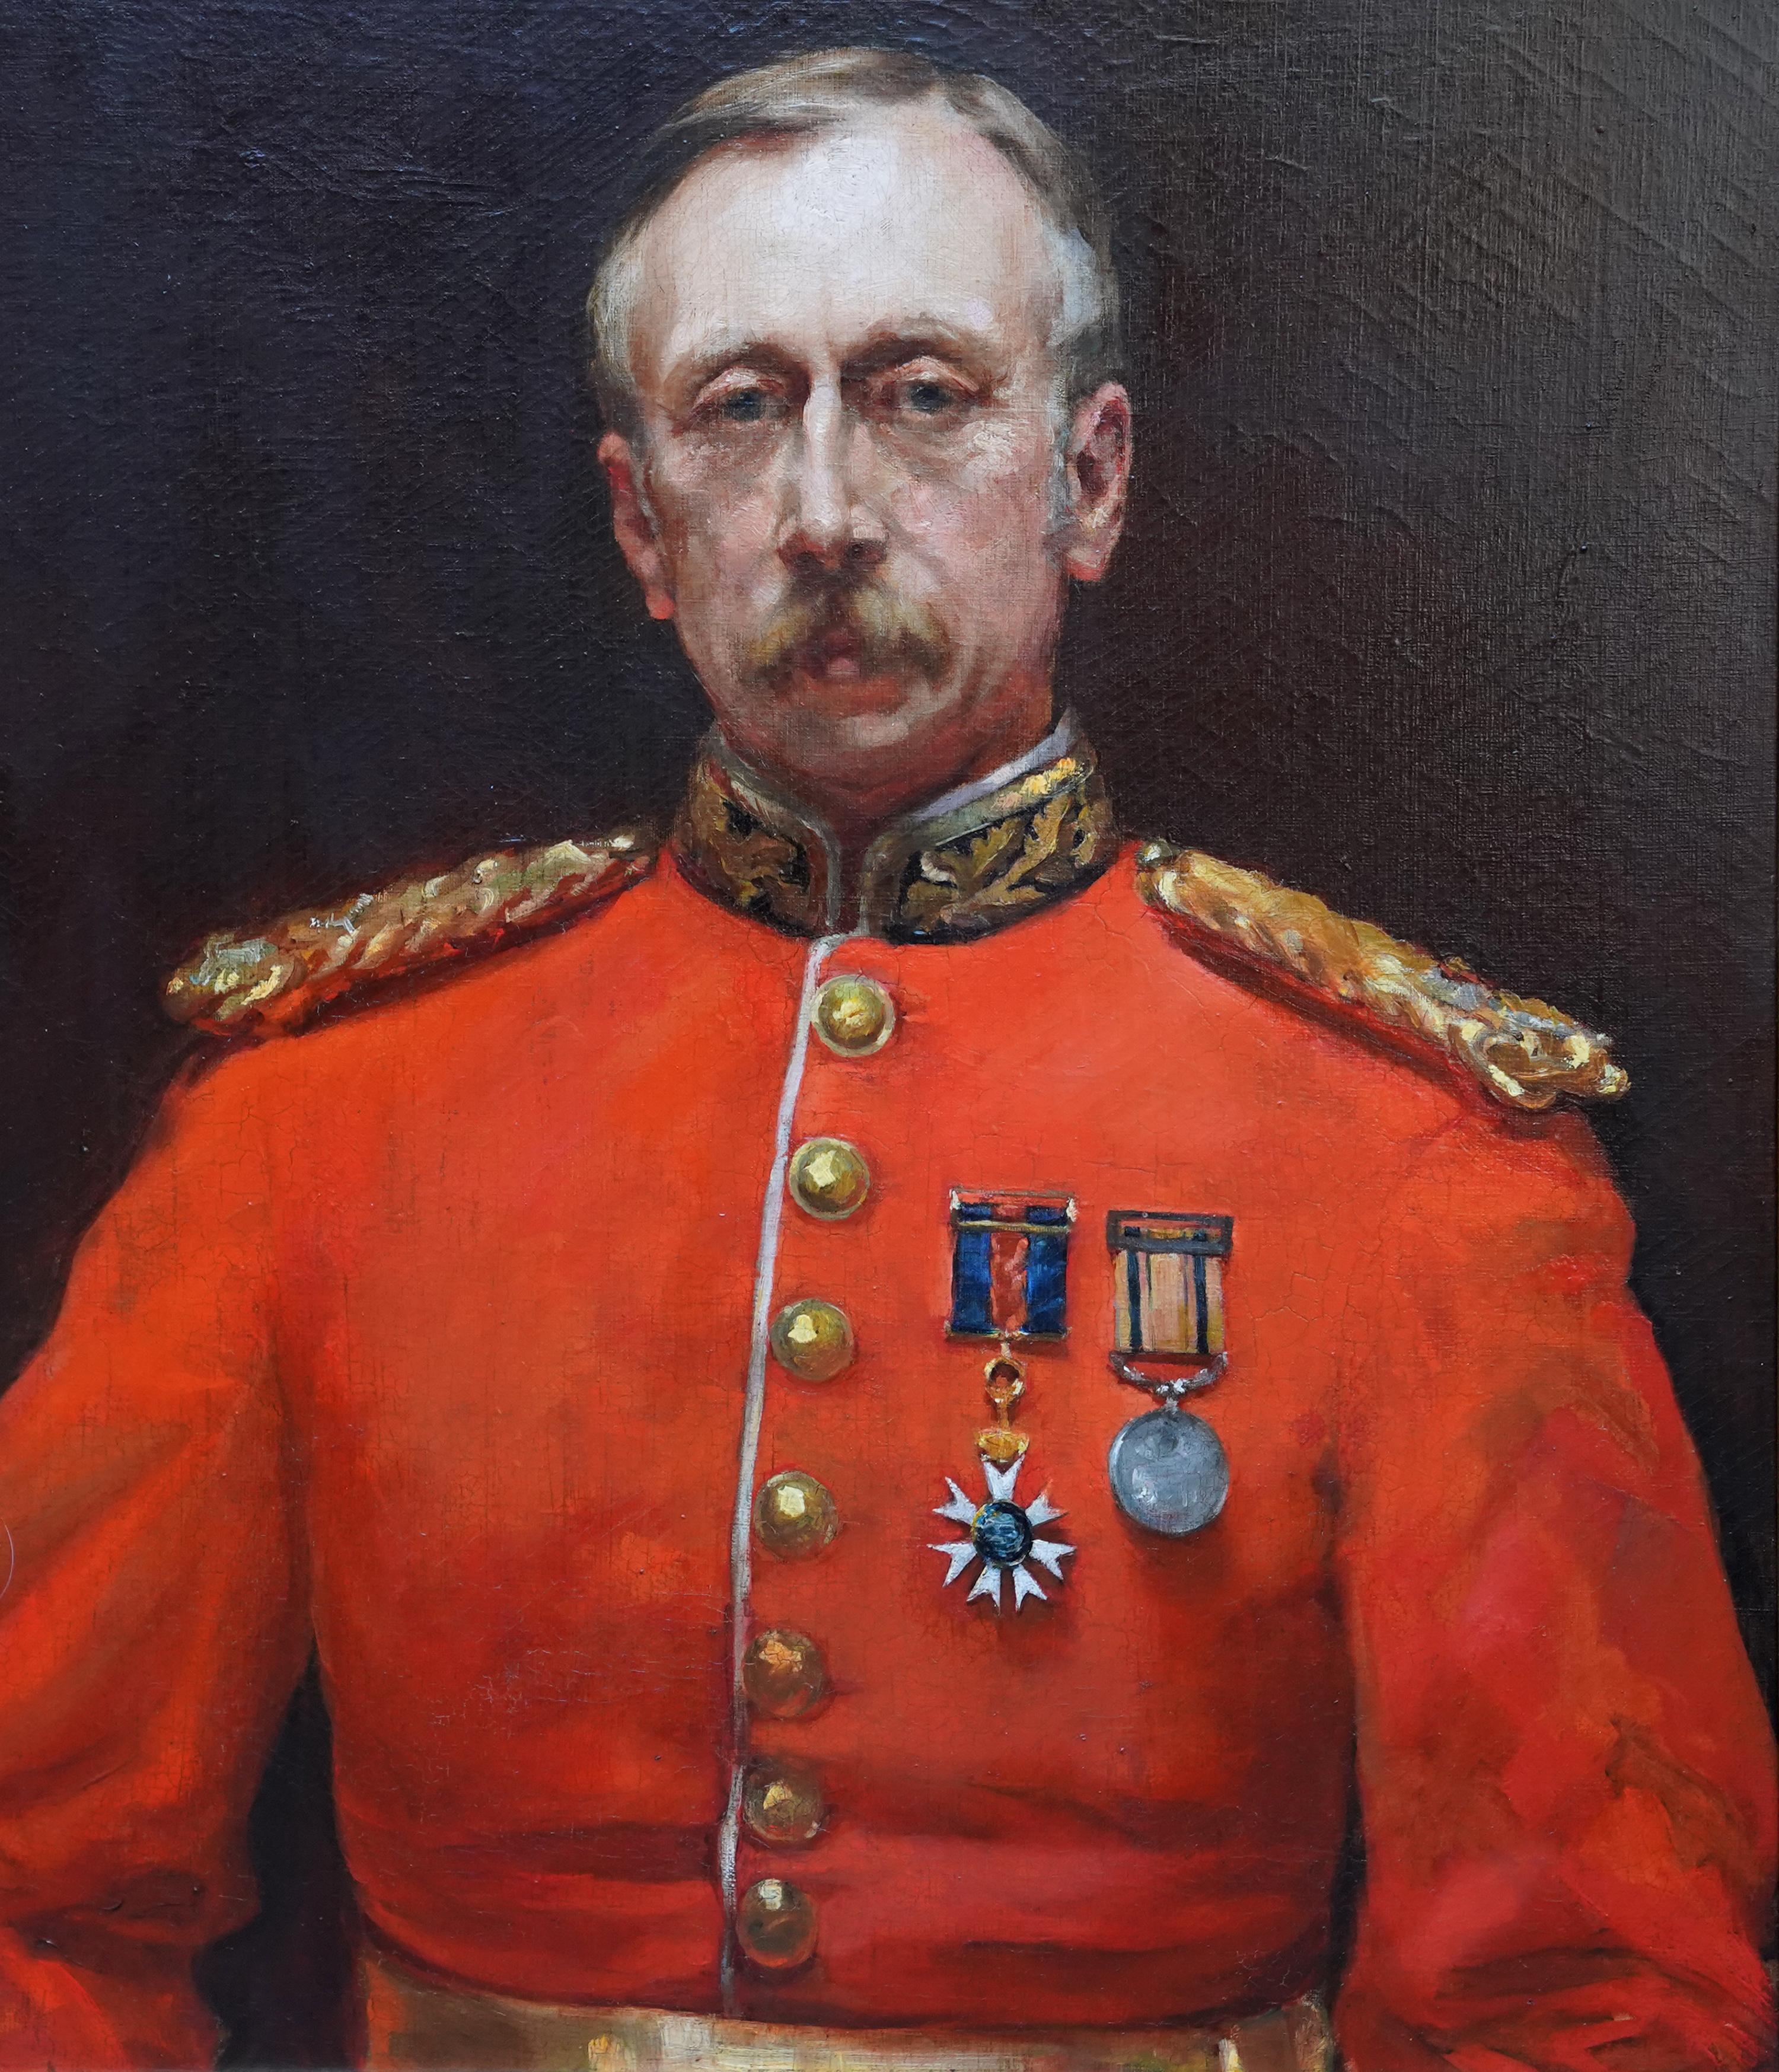 Portrait du major général Harding Steward - Peinture à l'huile militaire britannique du 19e siècle - Réalisme Painting par Edyth Starkie